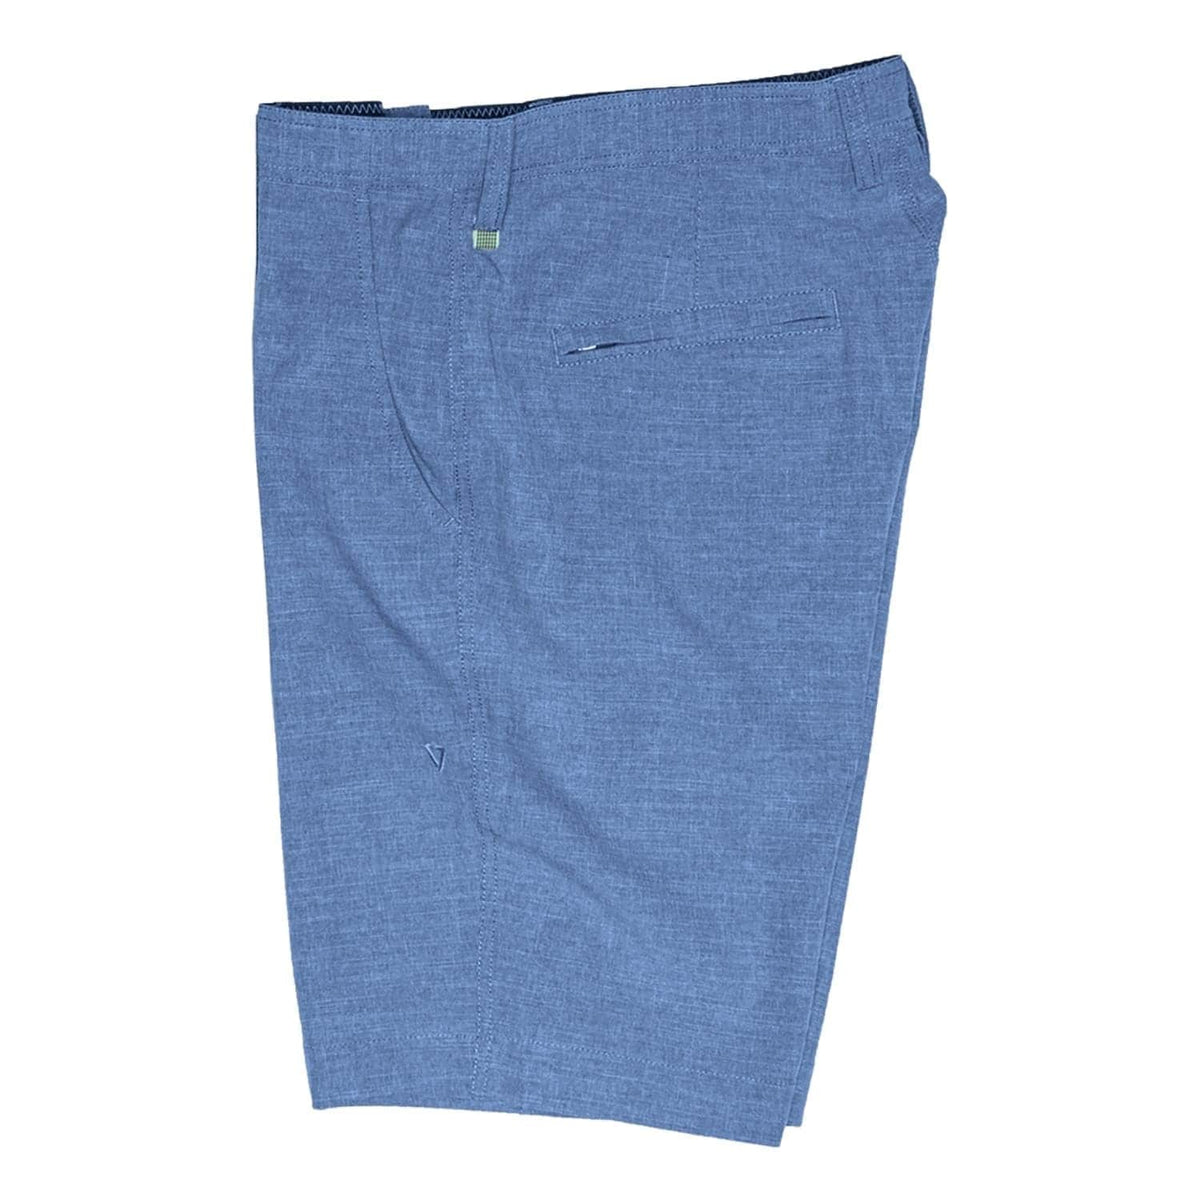 Vissla Fin Rope Hybrid 17in Walkshorts - Harbor Blue - Boys Chino Shorts by Vissla